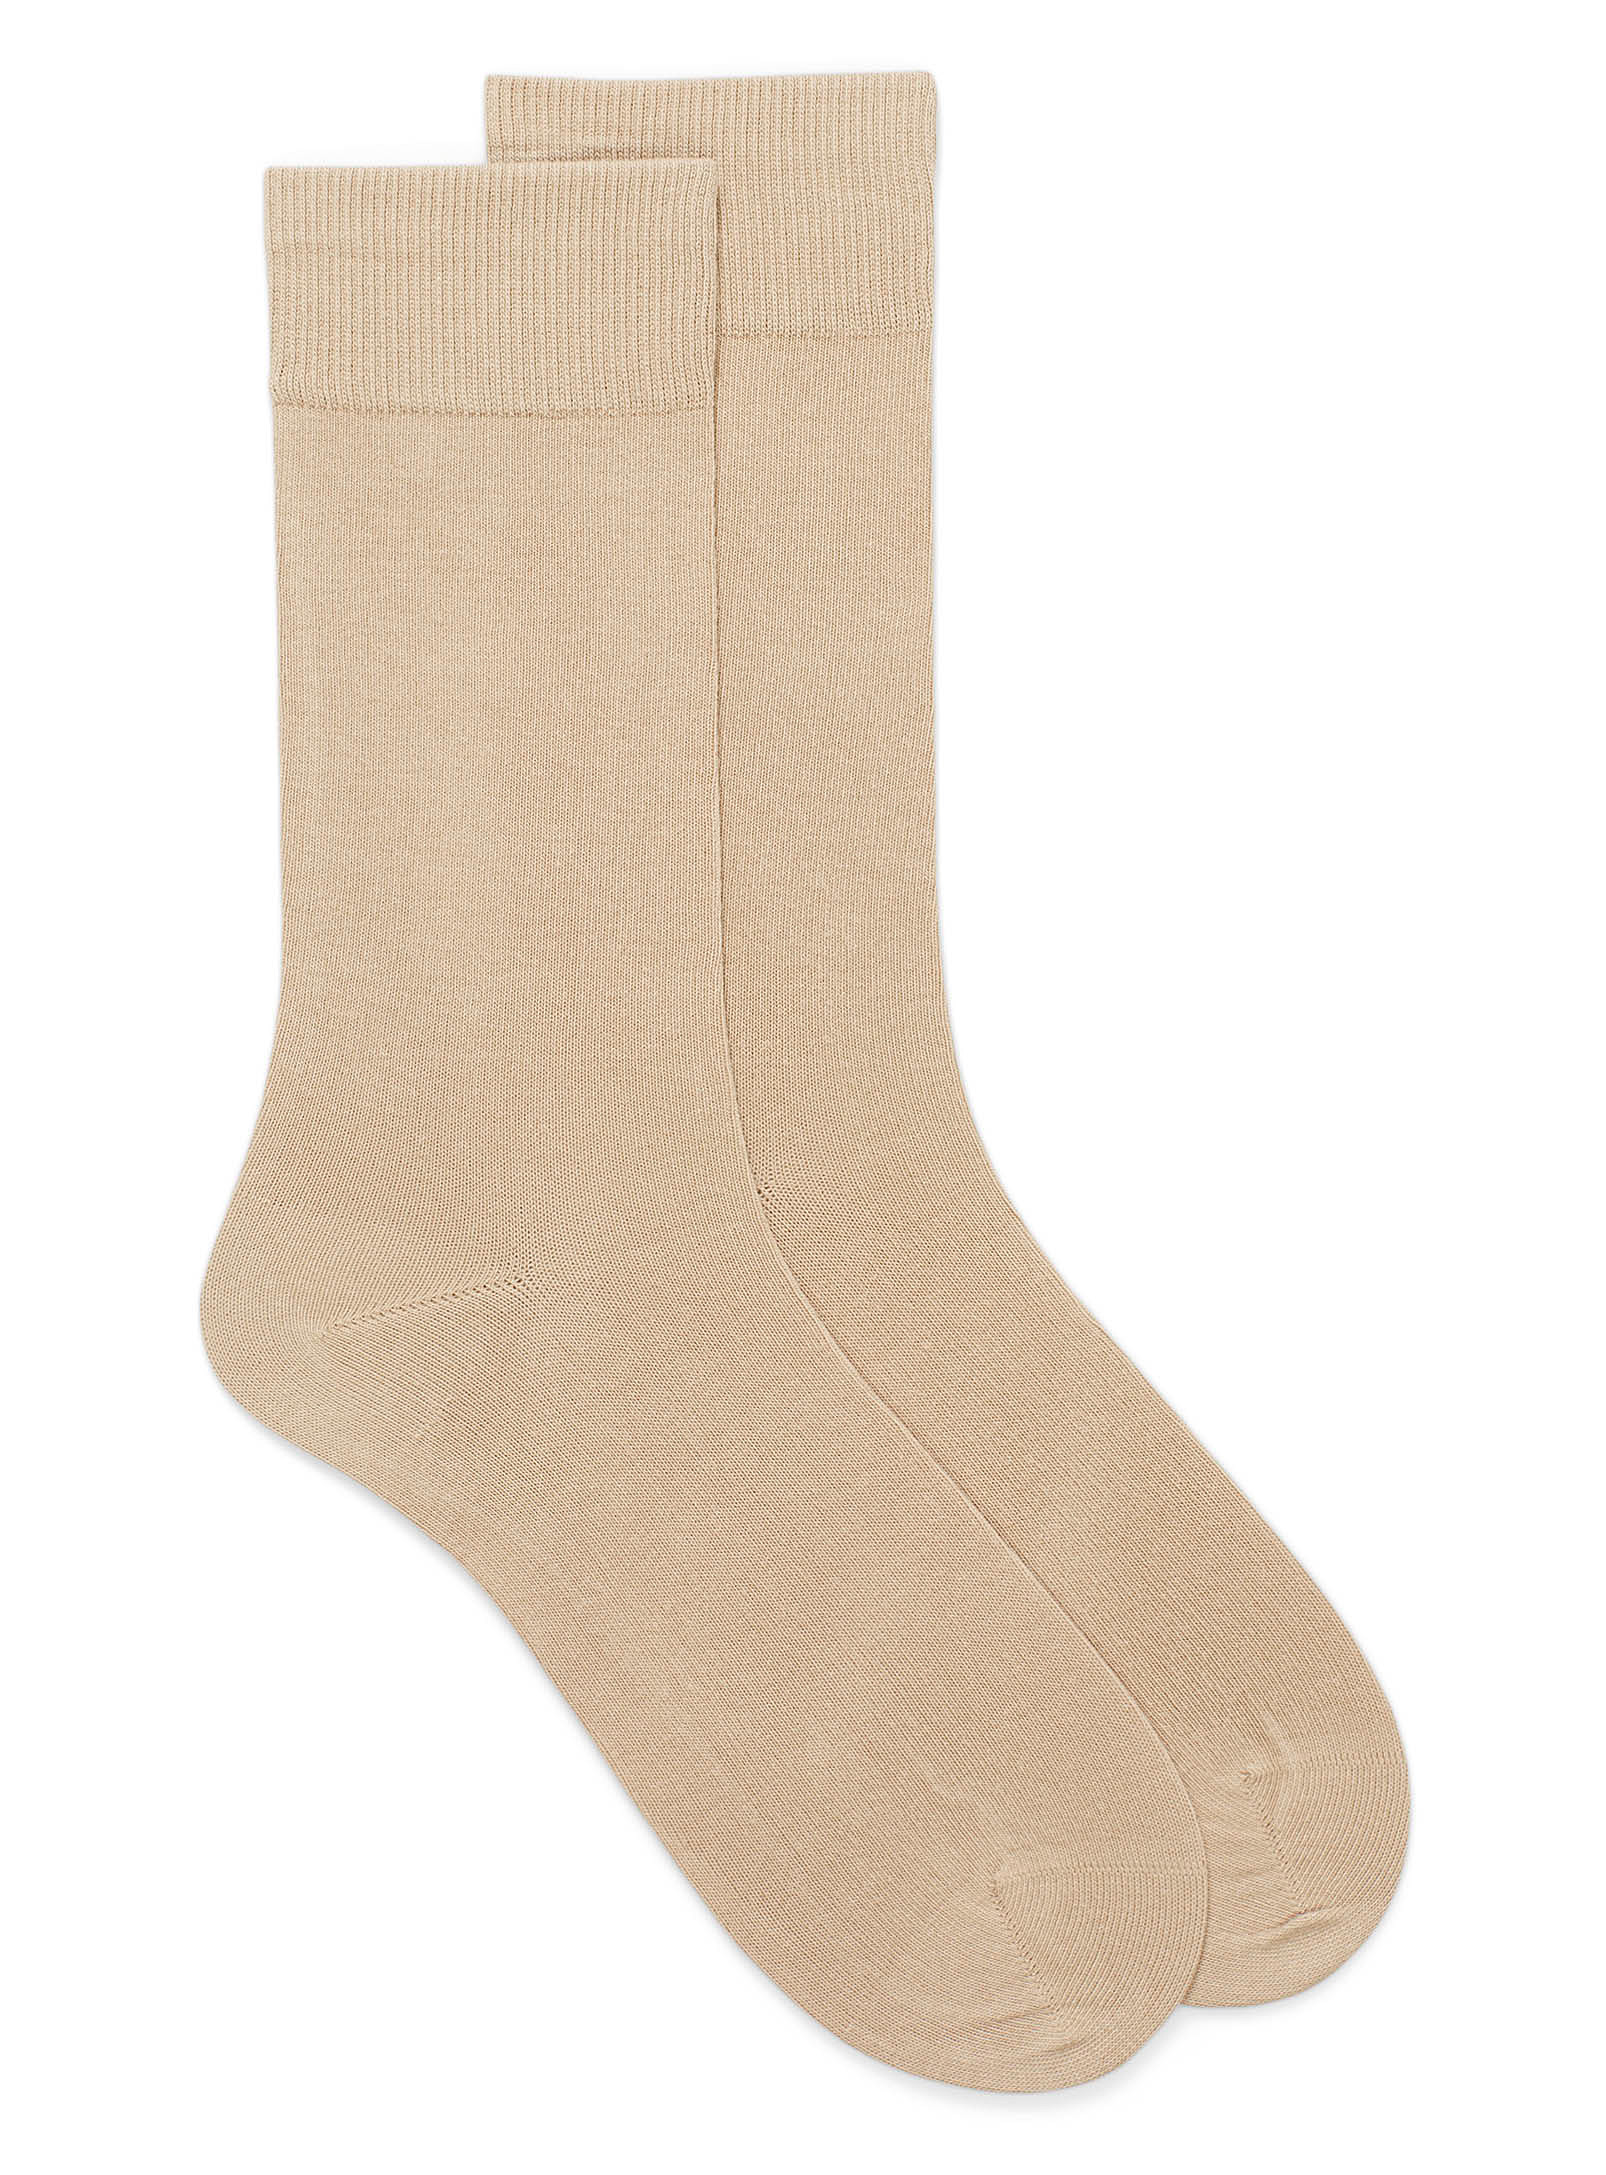 Le 31 Essential Organic Cotton Socks In Cream Beige